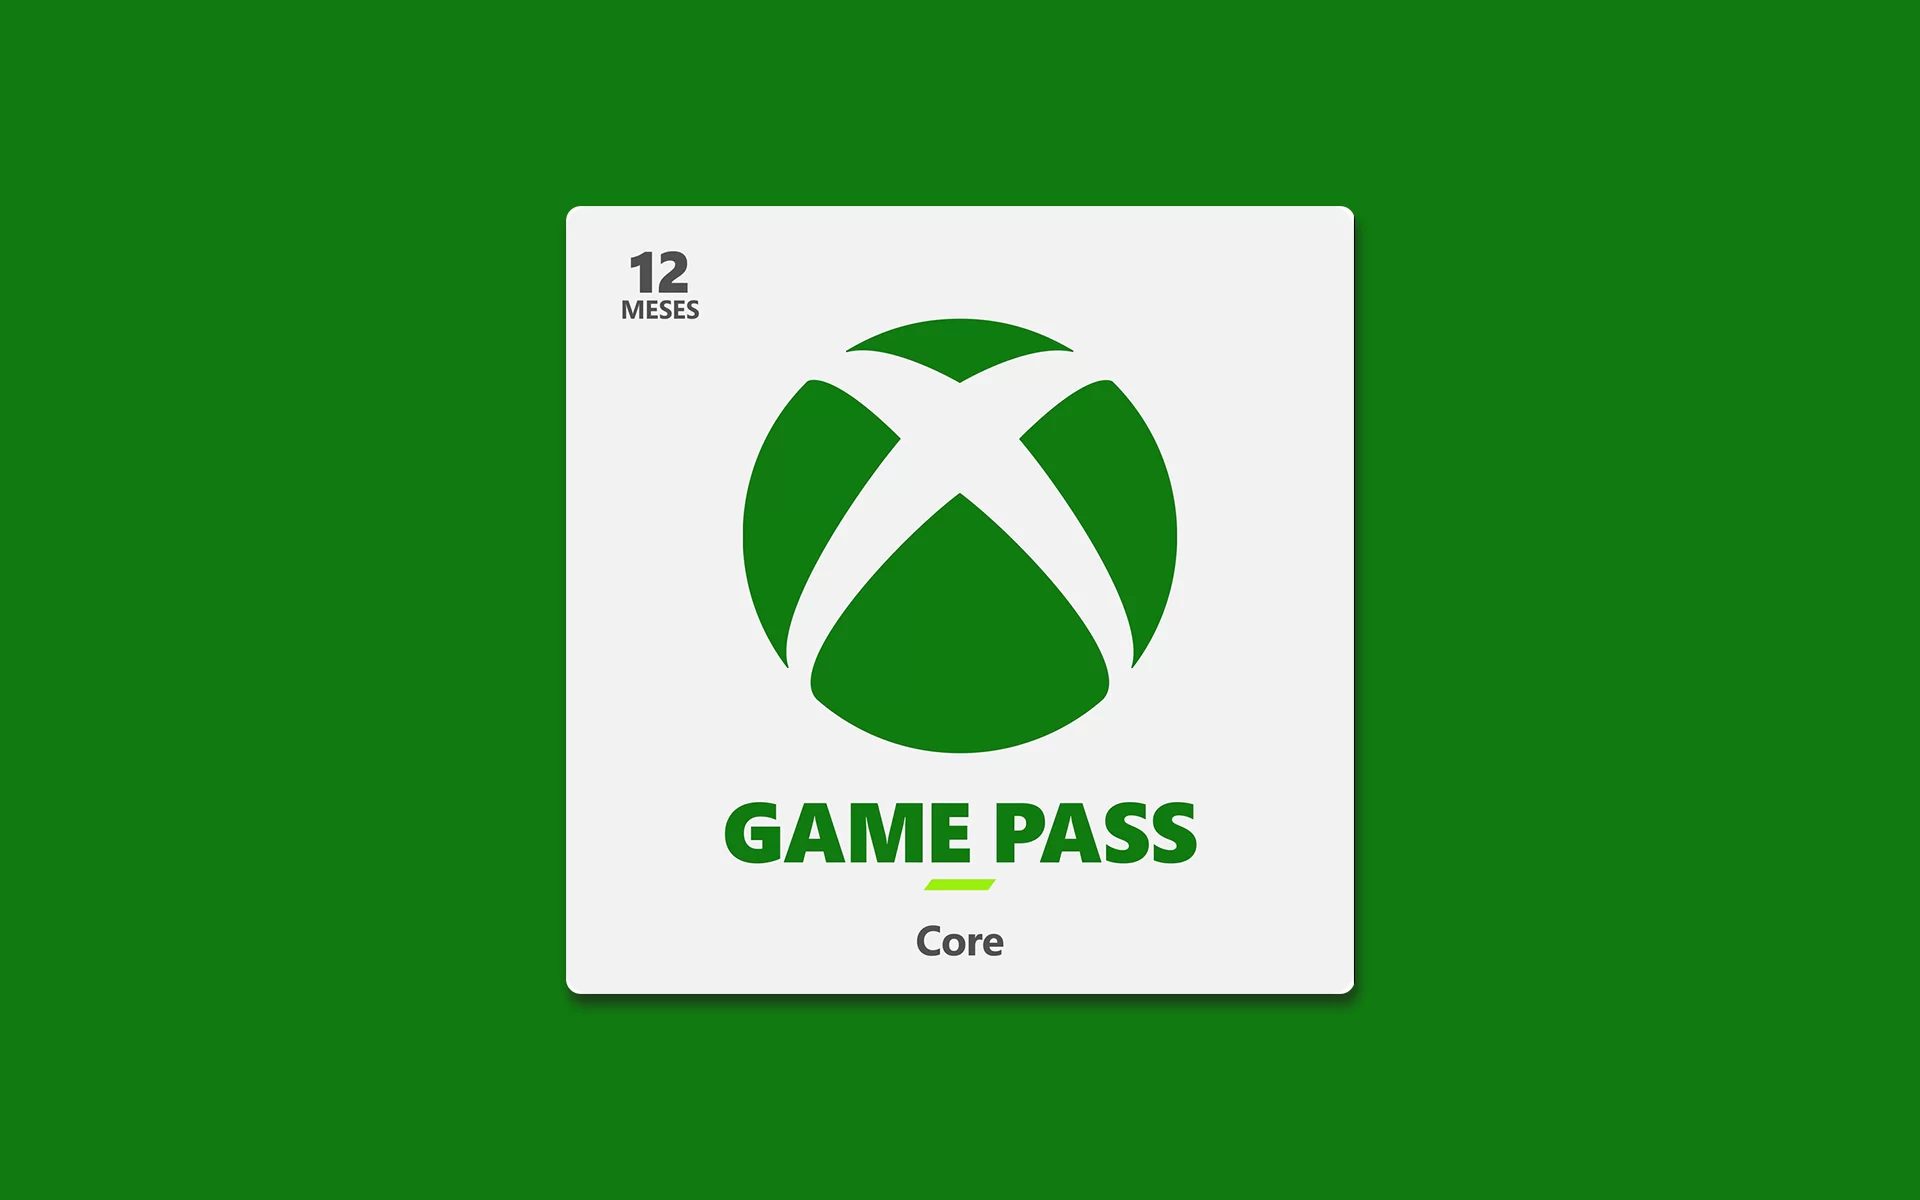 Cartão Presente Gift Card Digital Xbox Game Pass Console